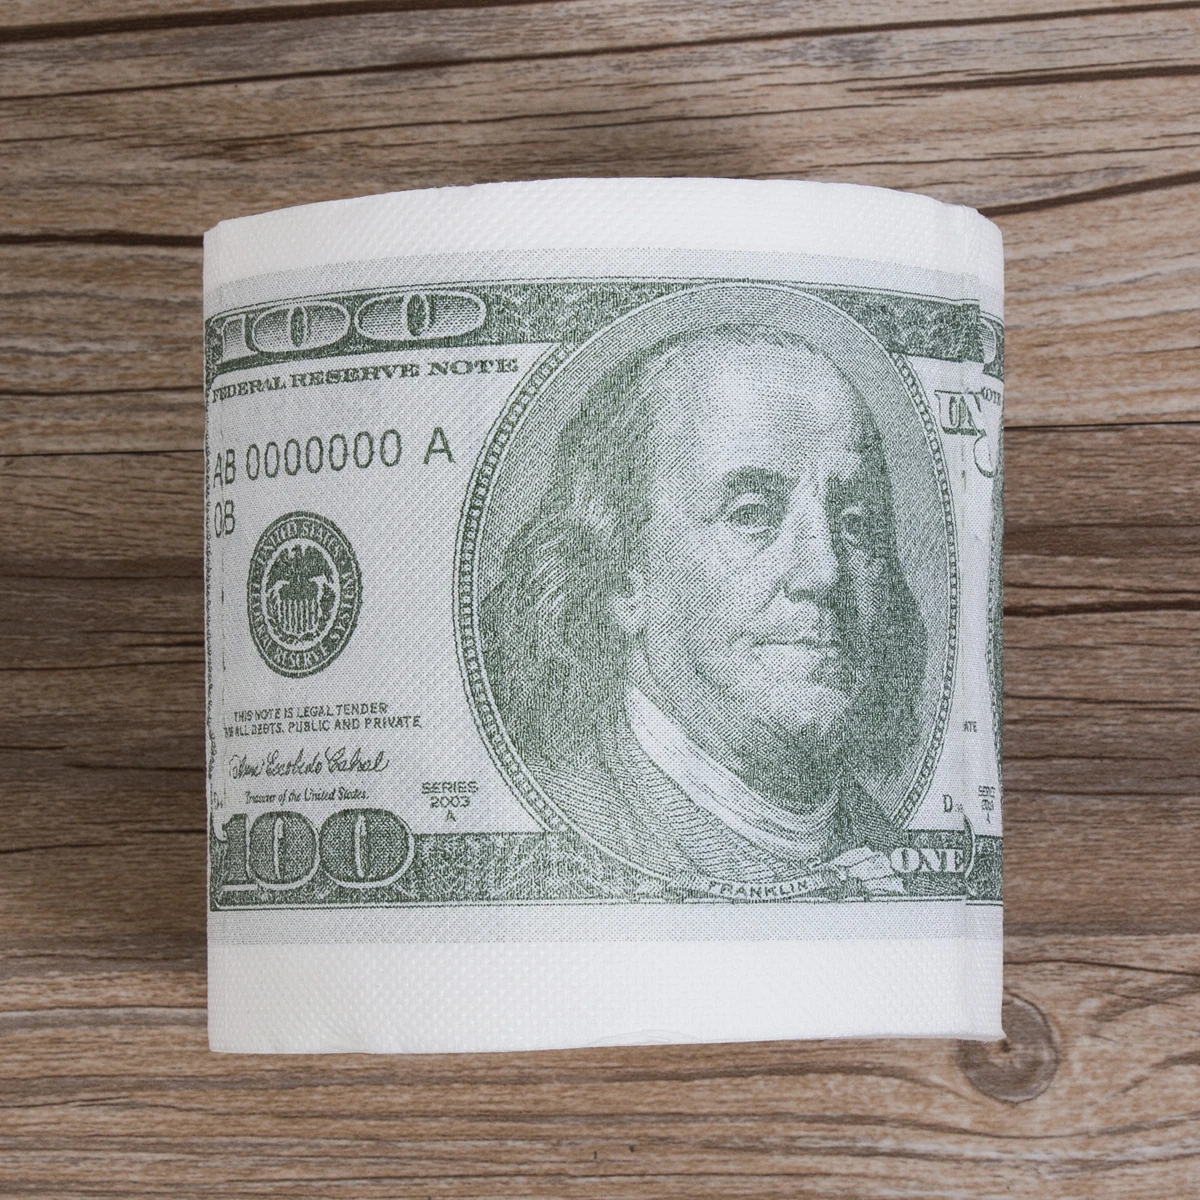 Горячая Новинка смешной подарок Дональд Трамп$100 доллар Билль туалетная бумага ролл дампа Трамп Доллар Рулон Бумаги туалет ванная древесная целлюлоза